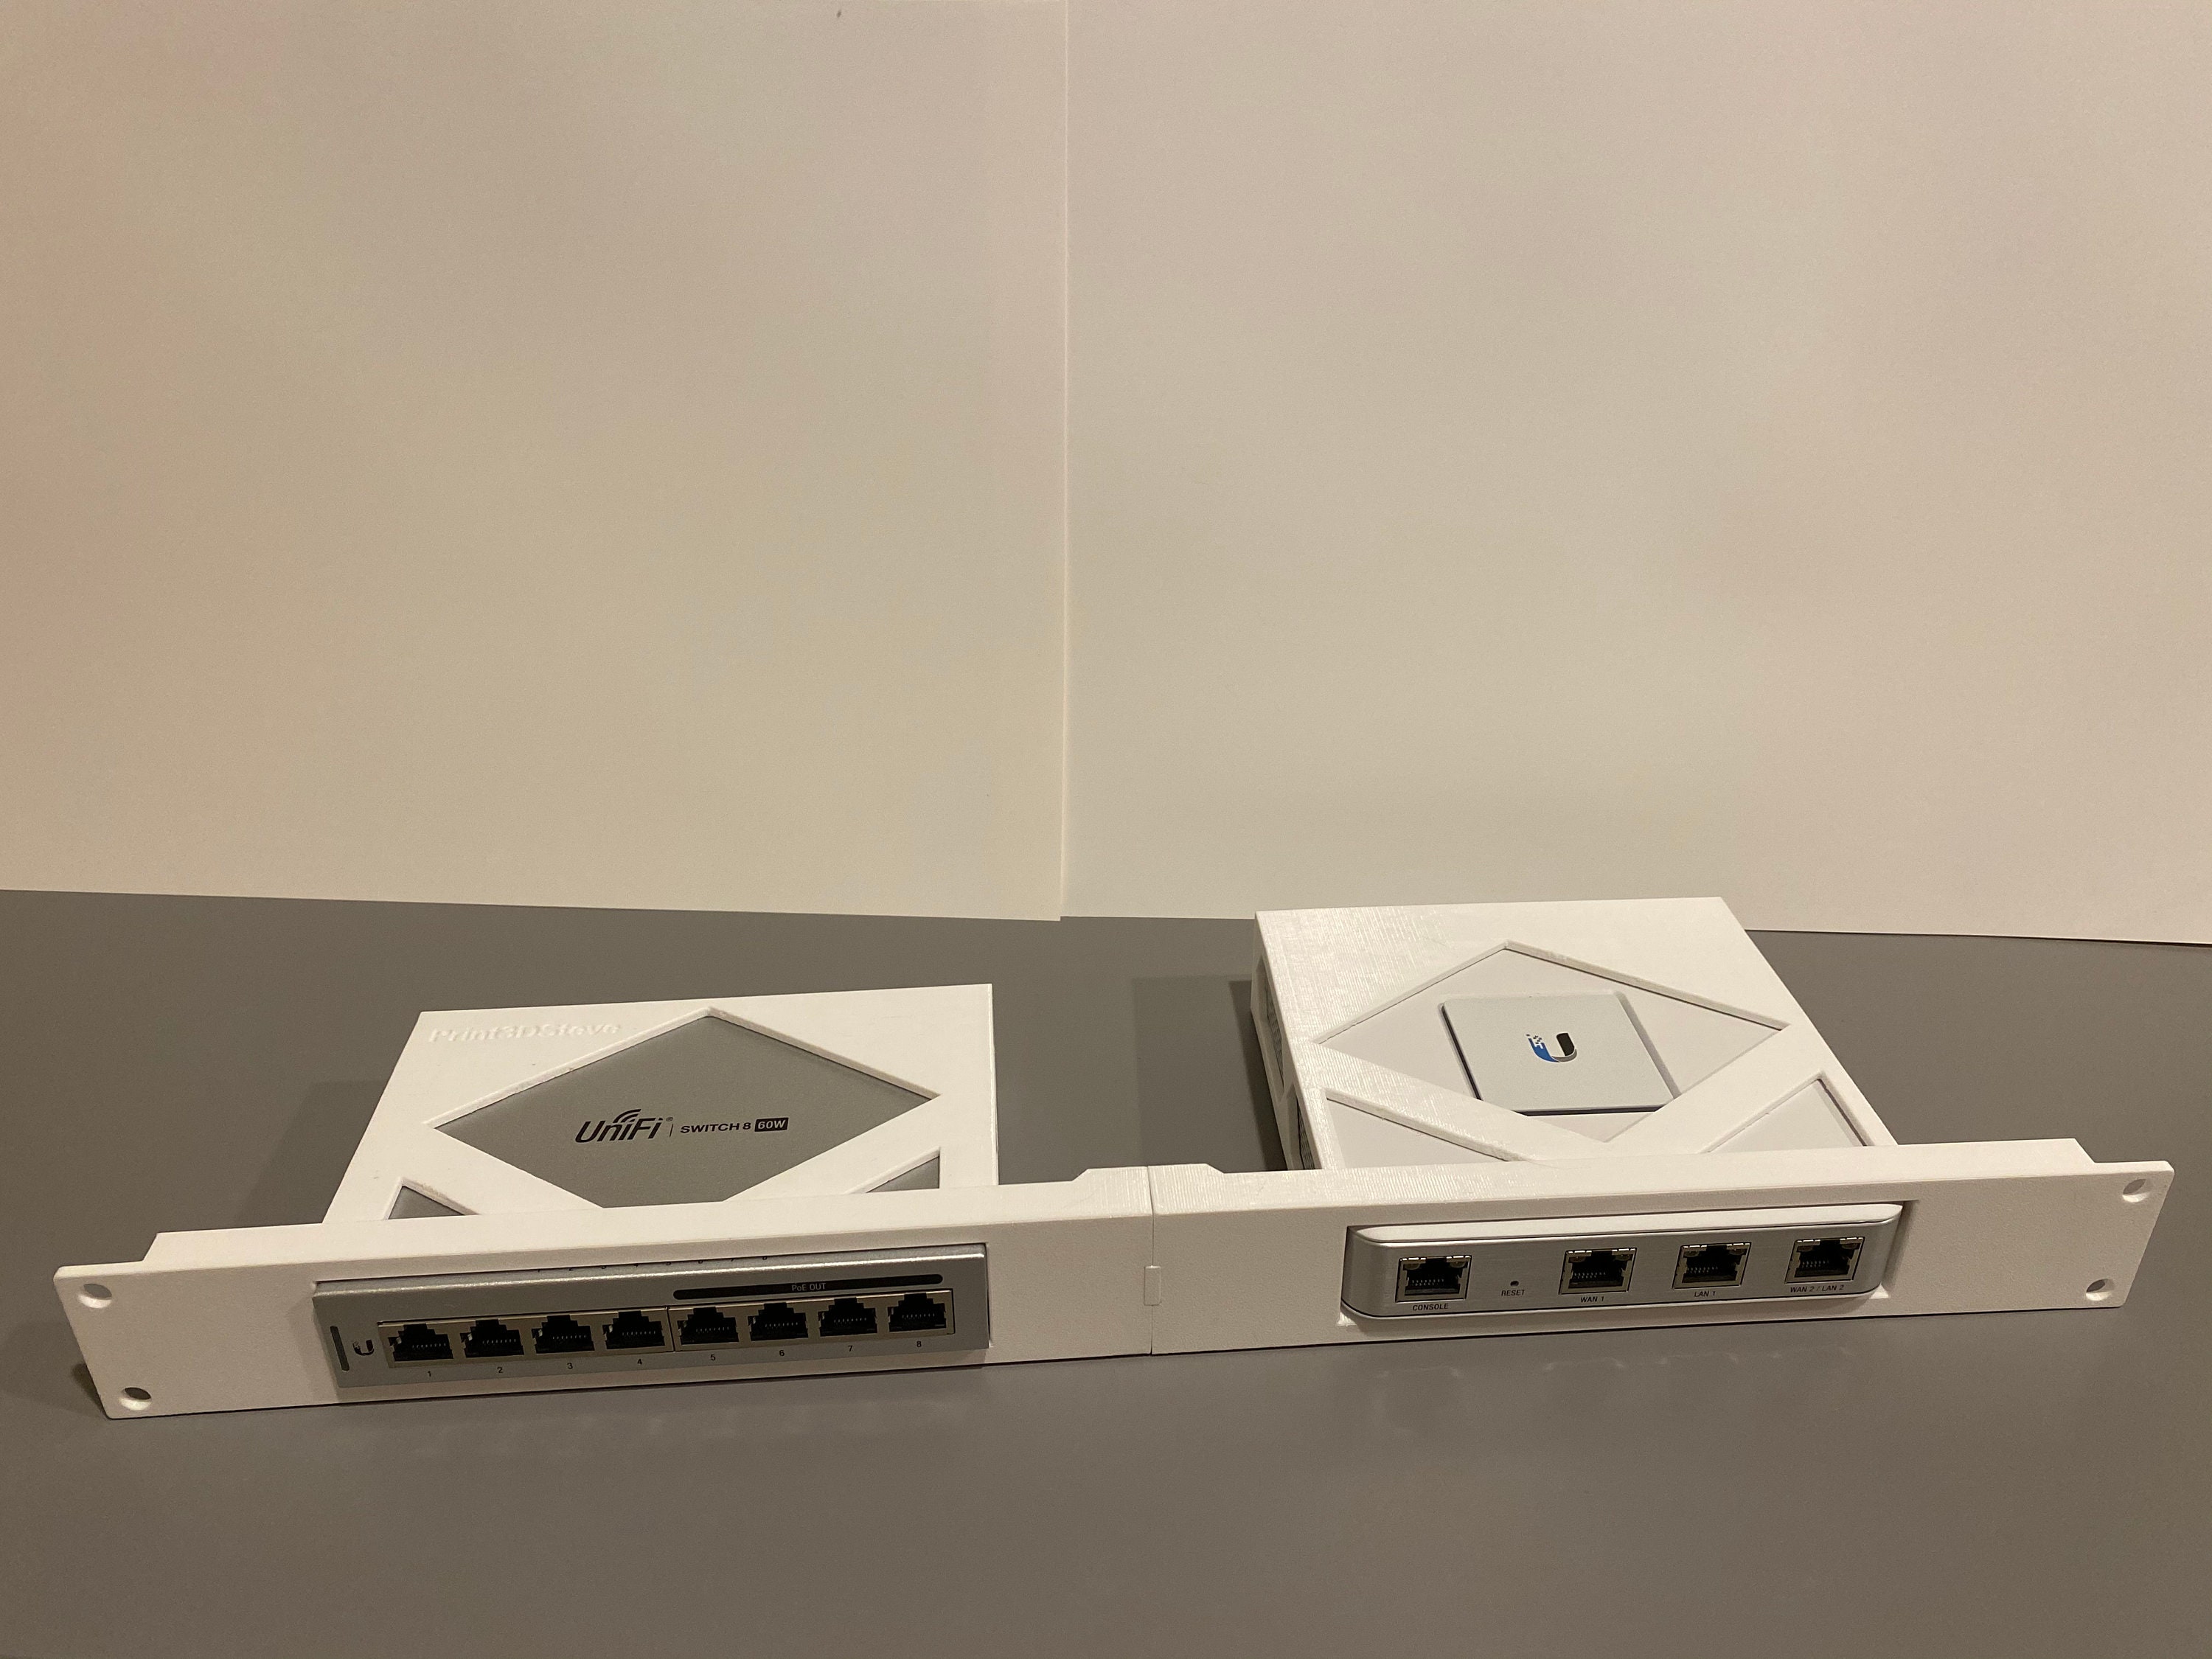 Watt Unifi - Security Mount & 8 Switch Etsy 1U Gateway 60 Port Rack